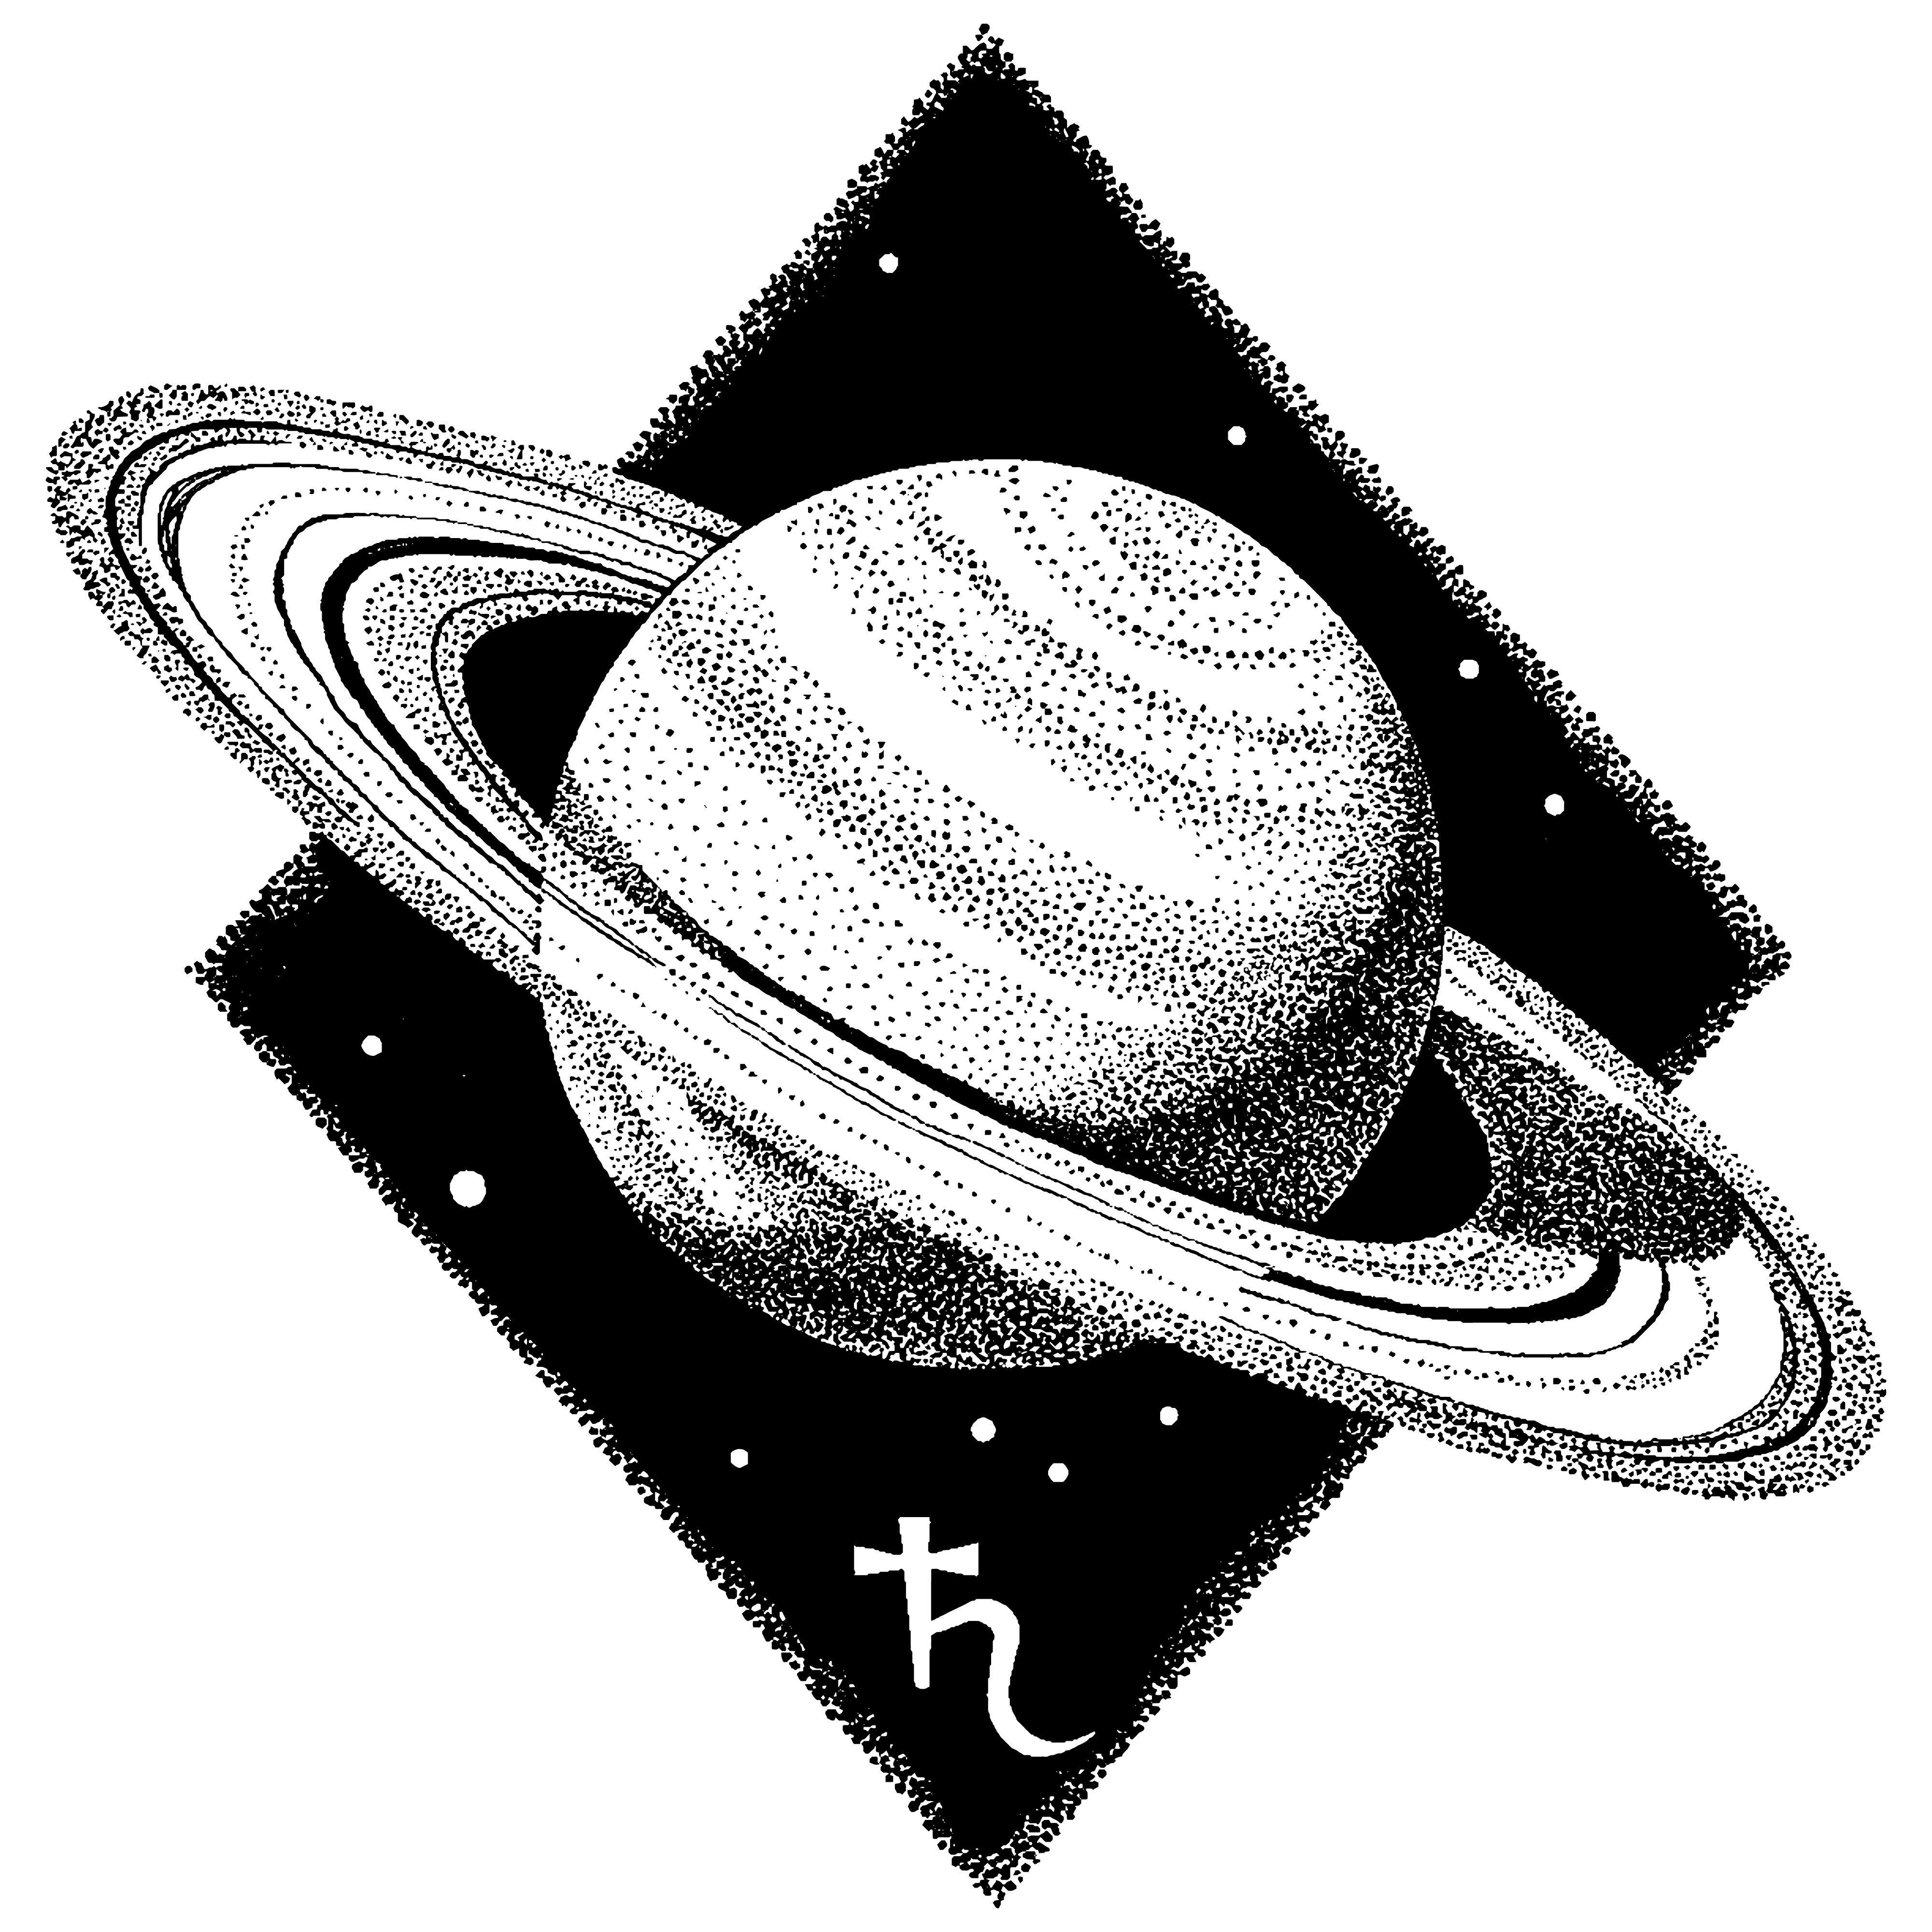 Planeta y símbolo de Saturno || Fuente: Shutterstock